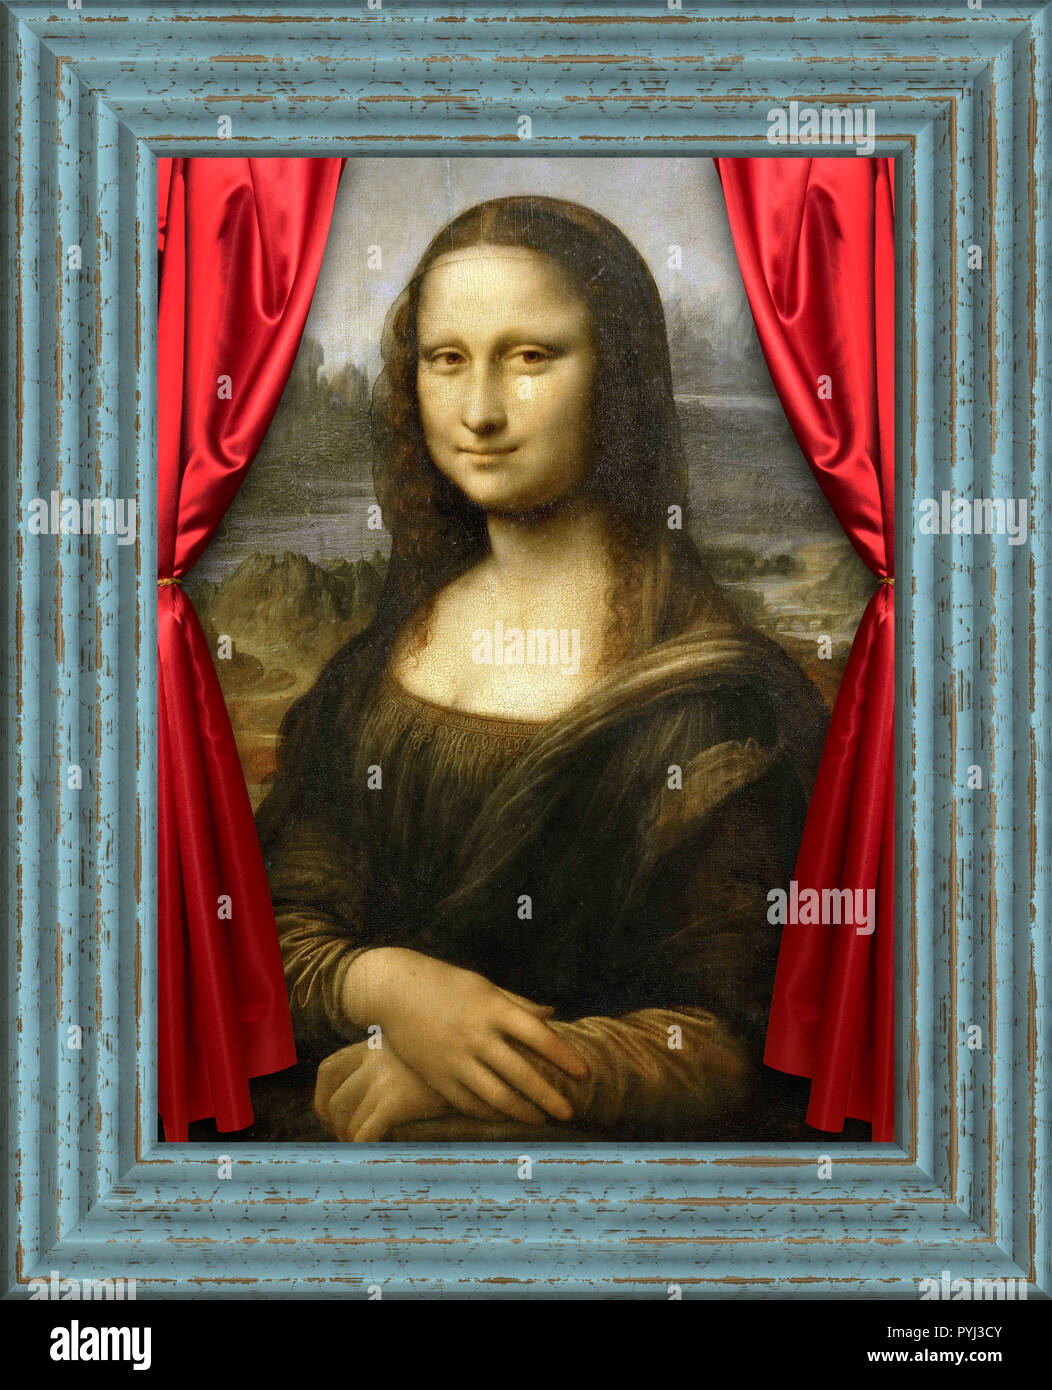 Berühmte Mona Lisa Gemälde von Leonardo da Vinci digital mit einem Rahmen und rote Vorhänge geändert Stockfoto